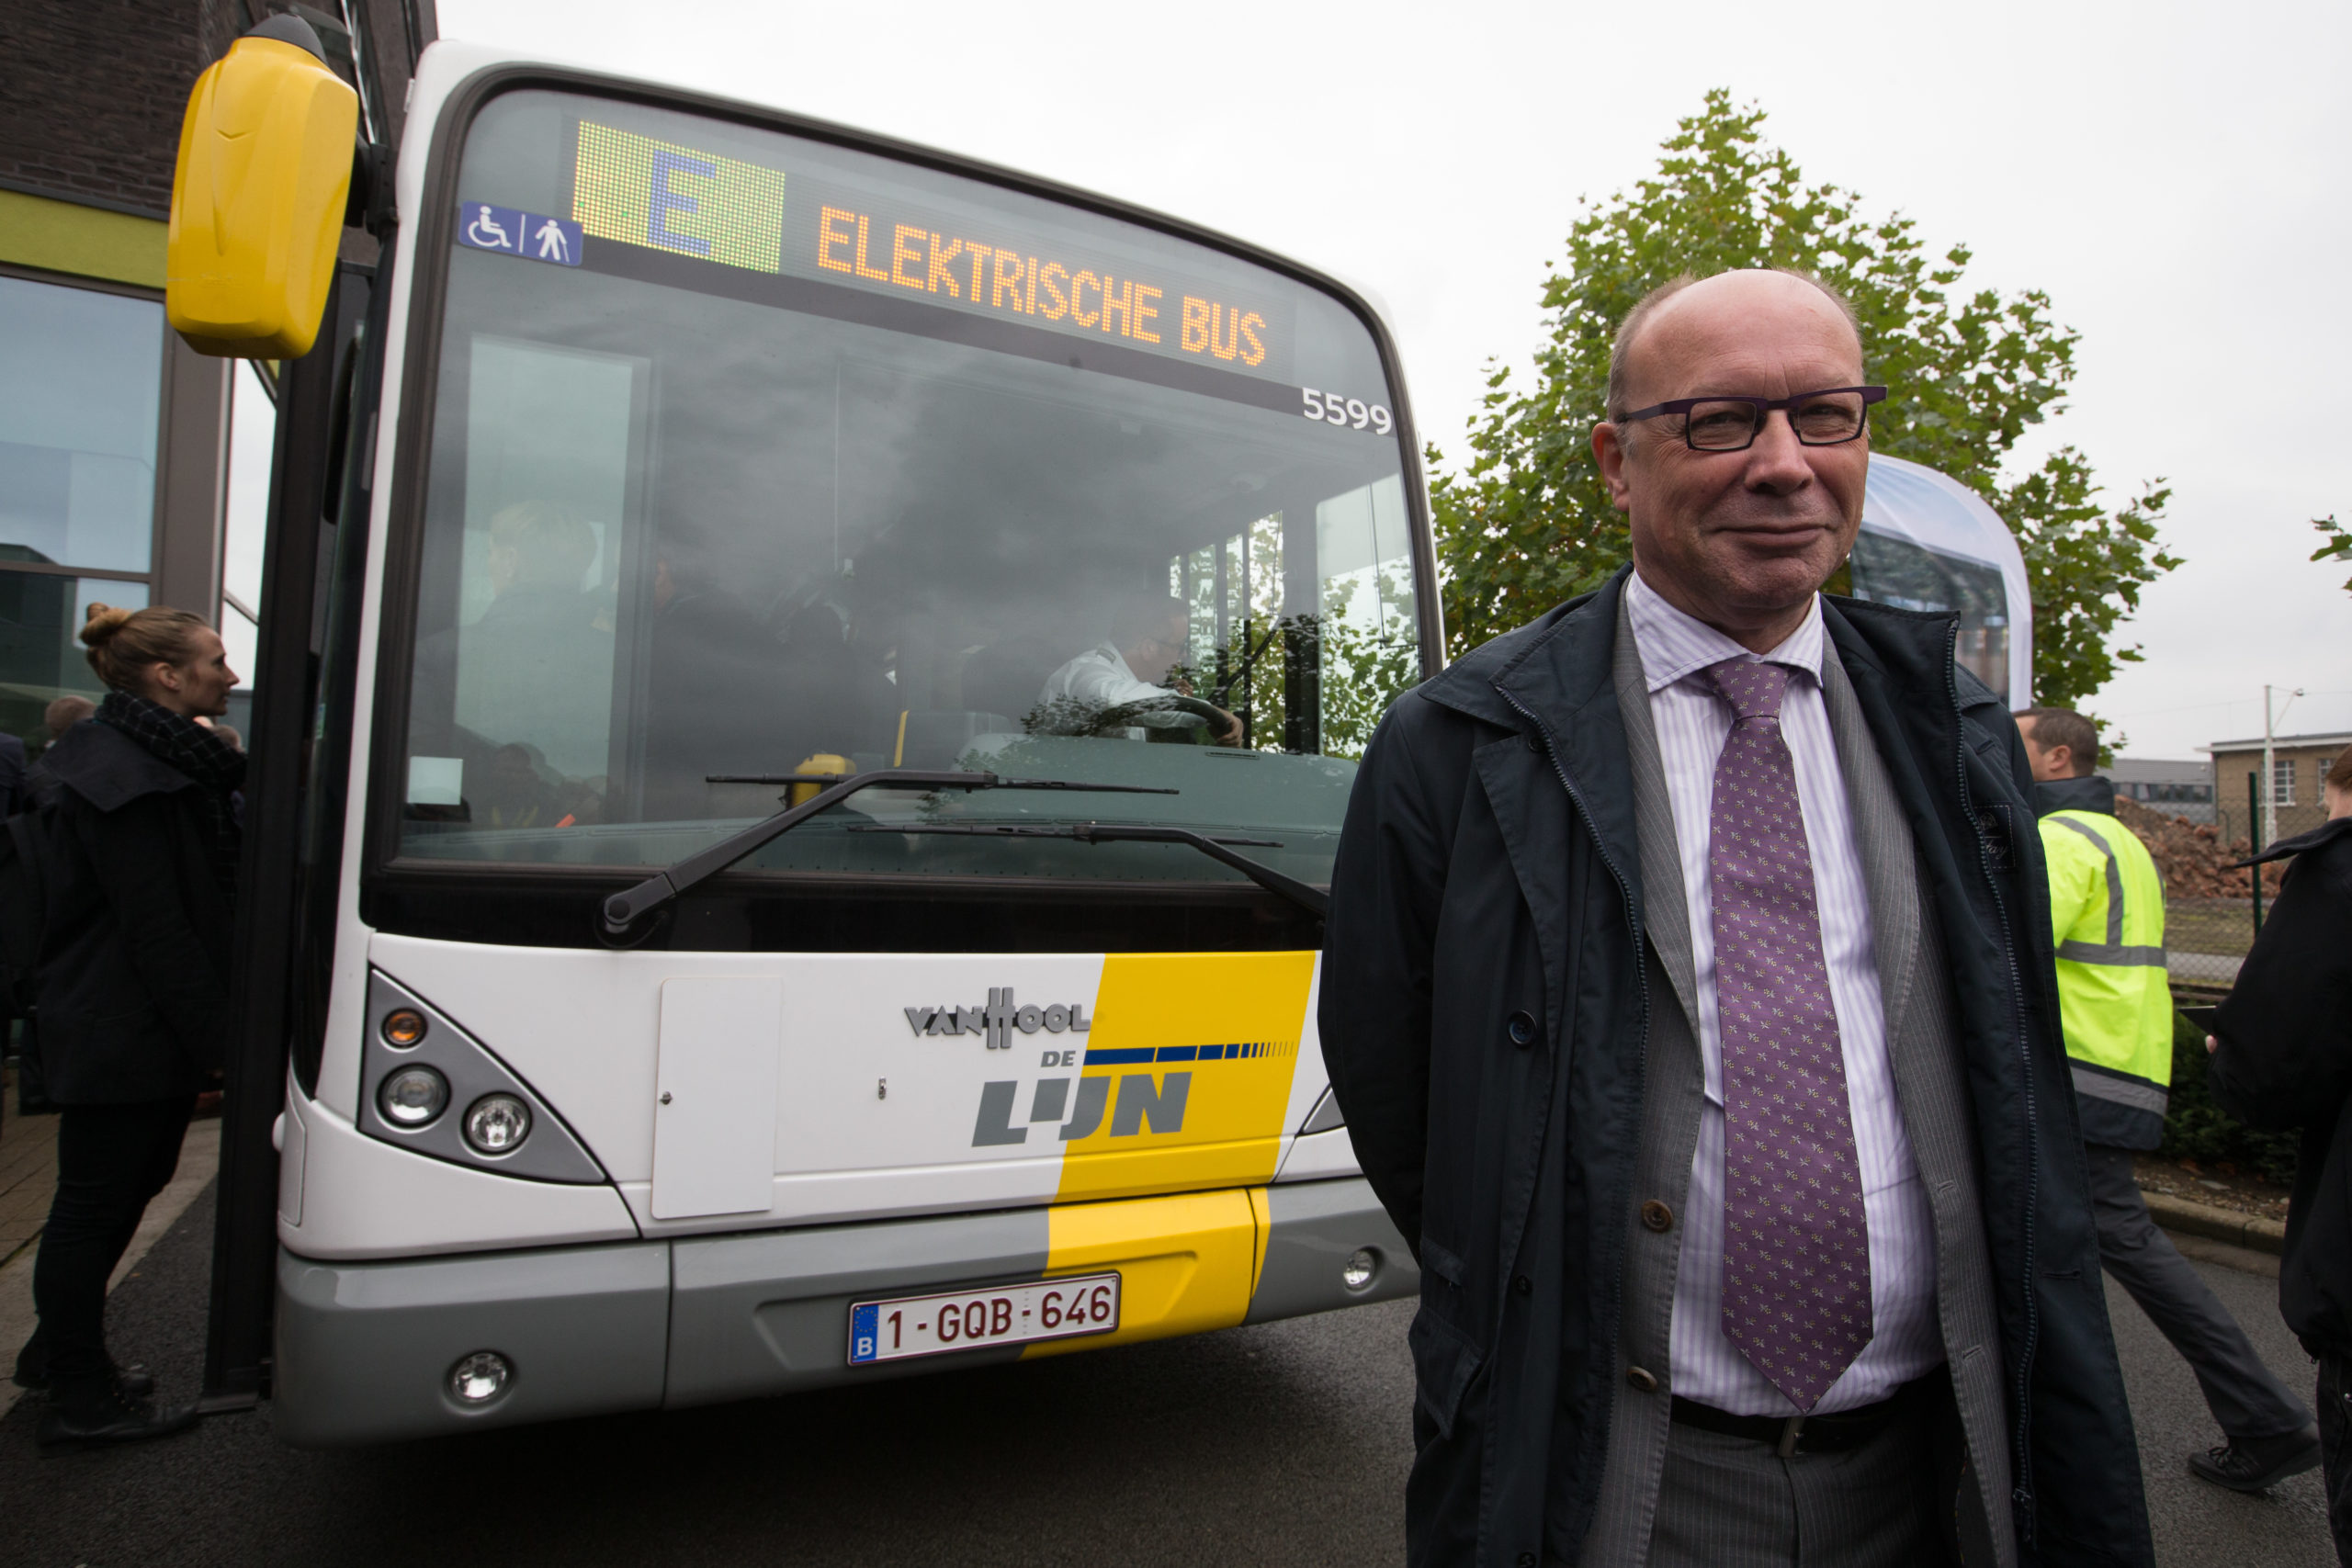 De Lijn to redo its e-bus tender homework (update)